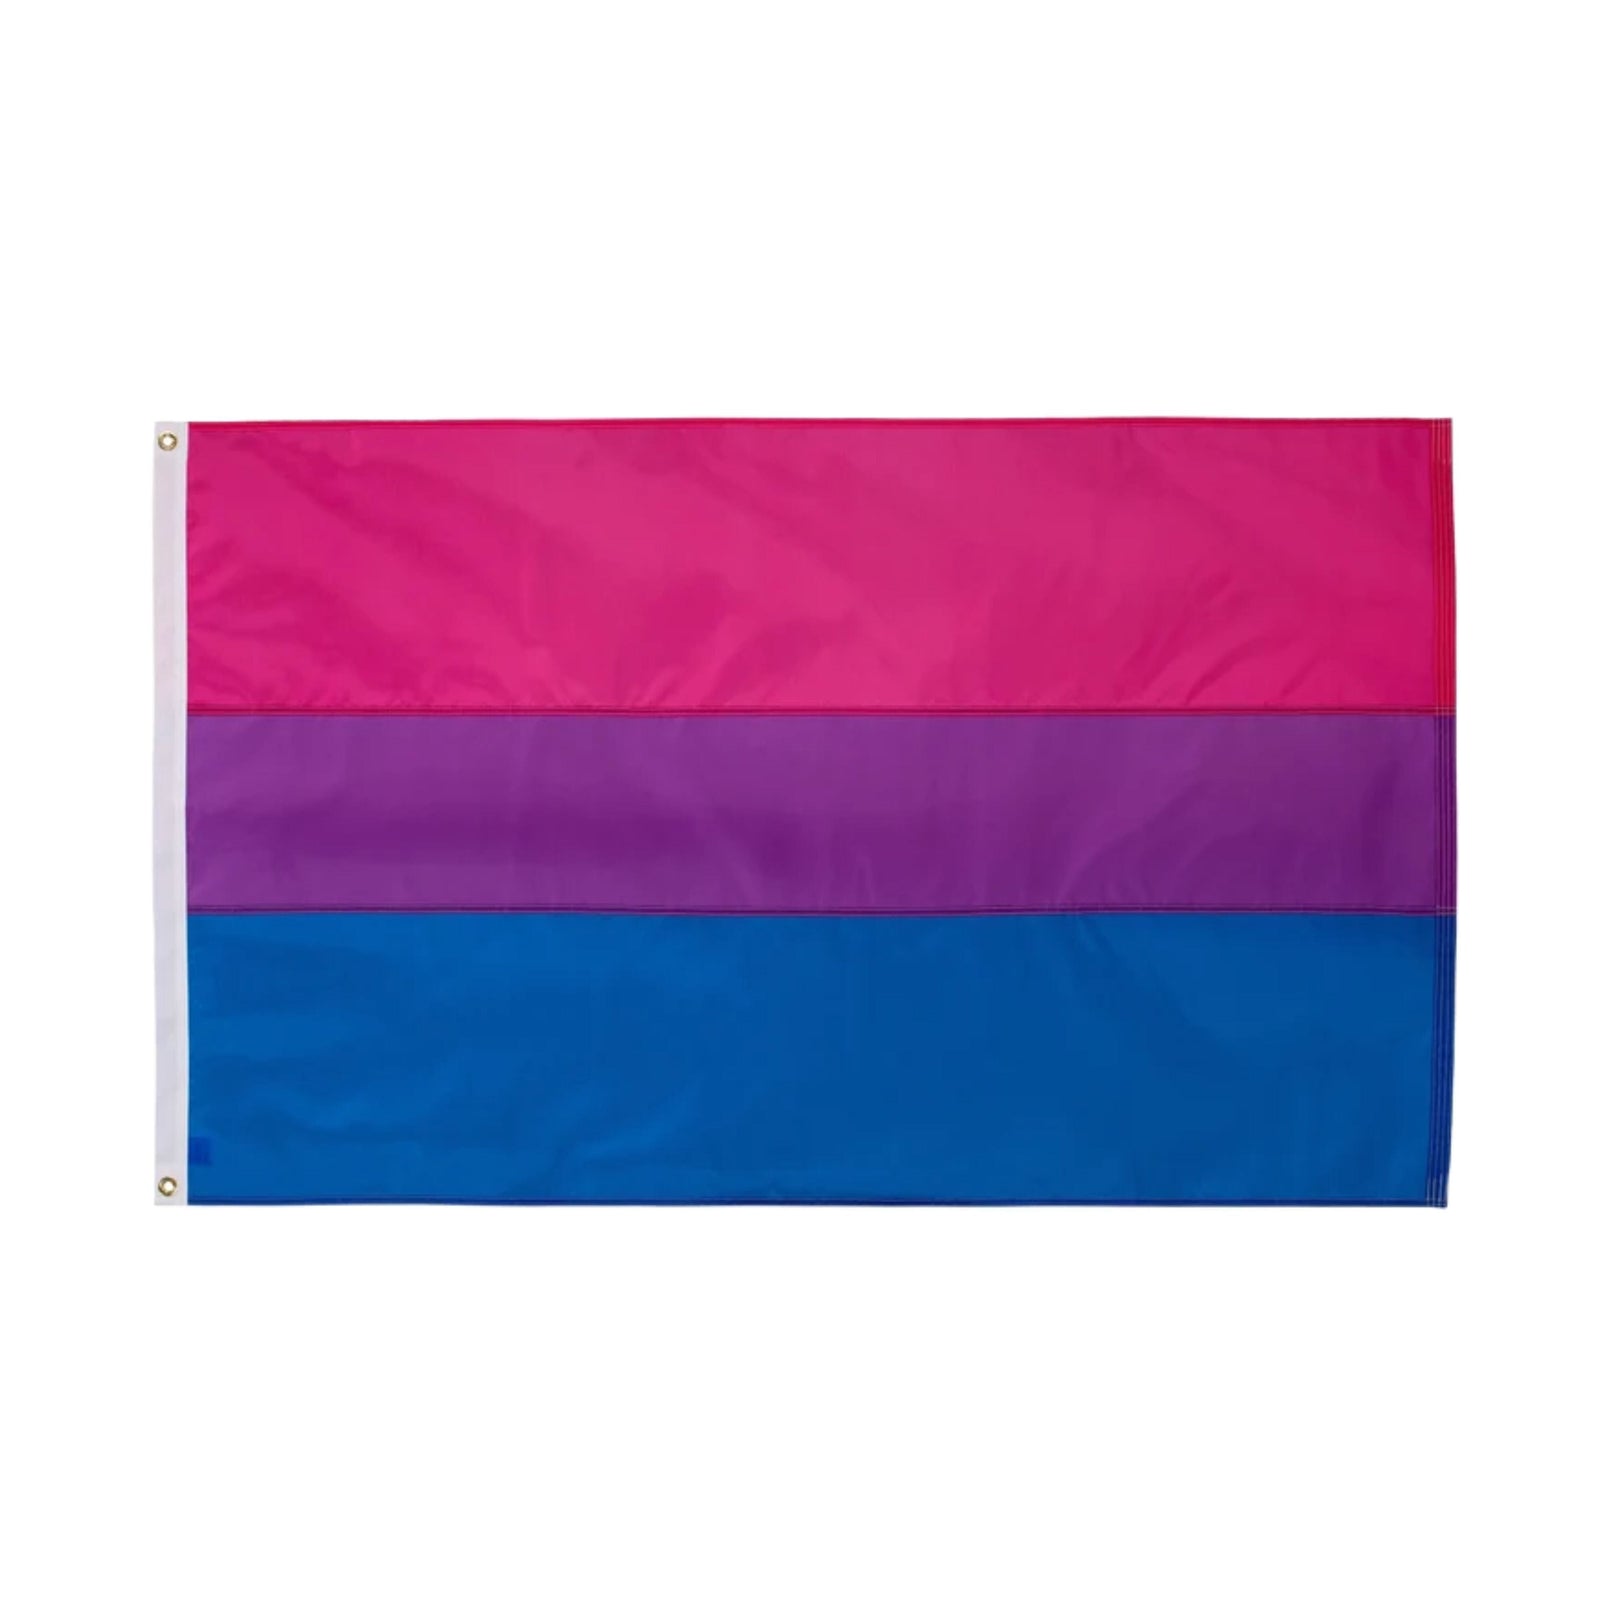 Bisexual Pride 3 Feet by 5 Feet Nylon Flag